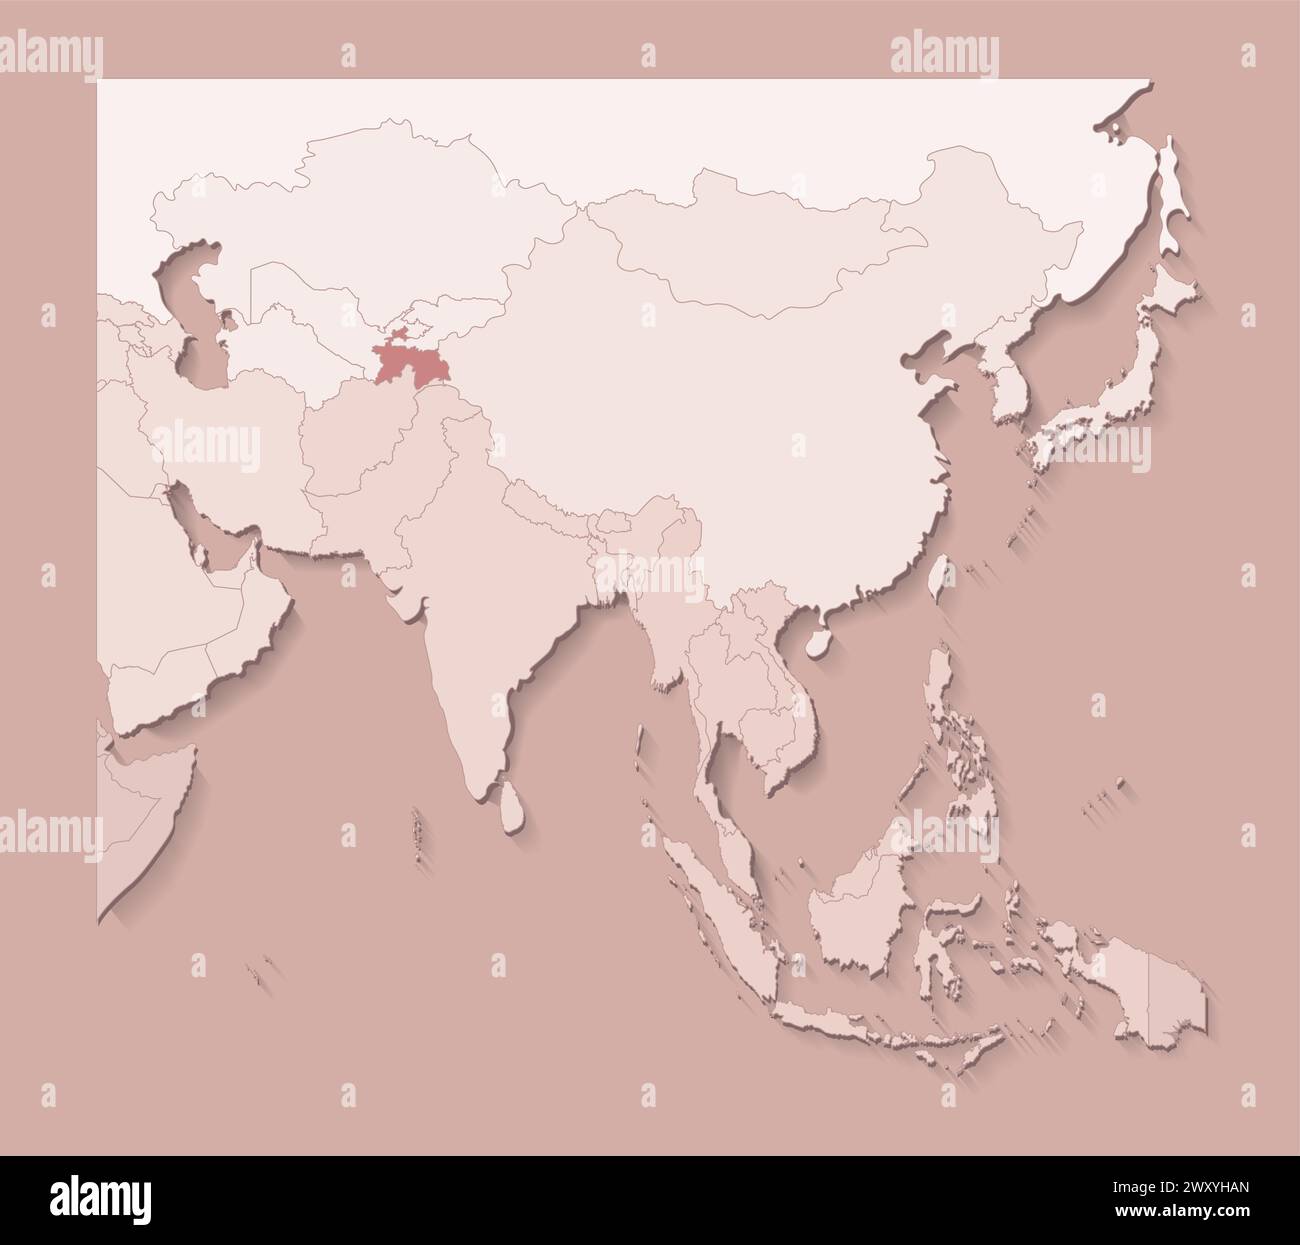 Illustrazione vettoriale con aree asiatiche con confini di stati e paese contrassegnato Tagikistan. Mappa politica di colore marrone con regioni. Backgroun beige Illustrazione Vettoriale